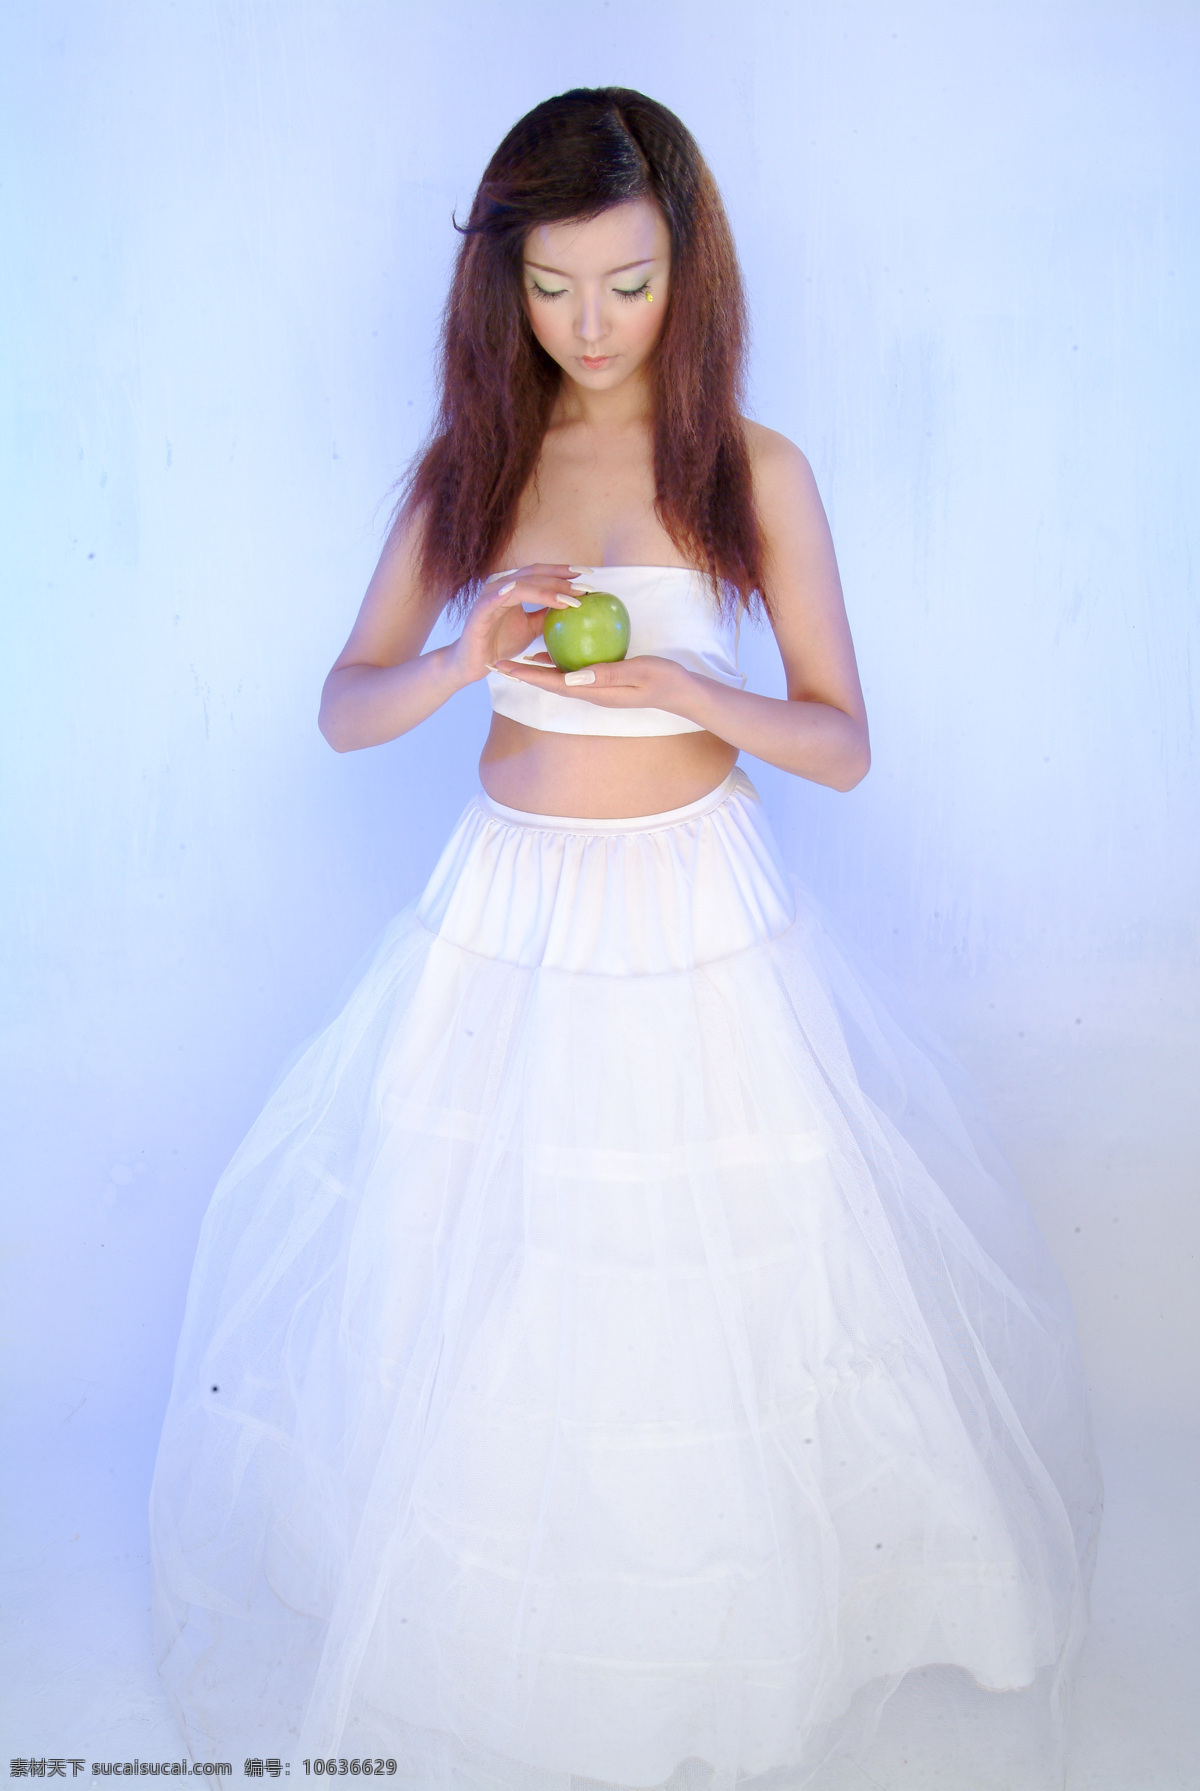 幻想海 美女 室内摄影 照片 写真 苹果 背景 书 笑容 花 青苹果 人物摄影 人物图库